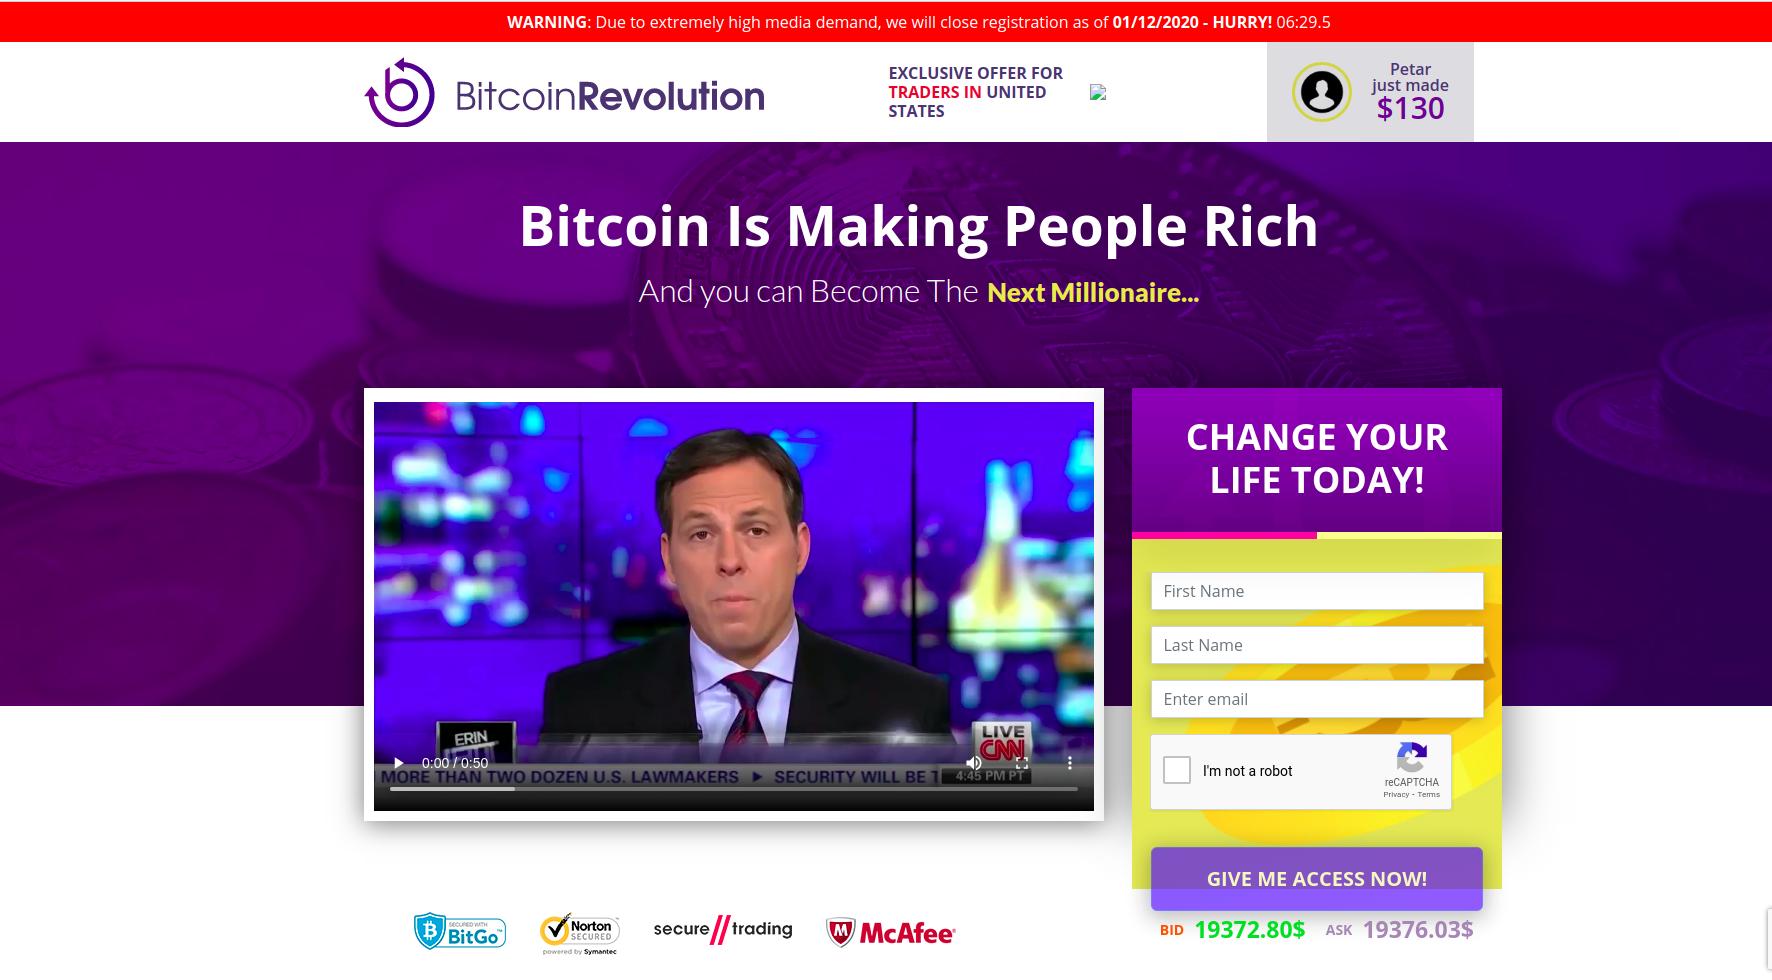 fraud-factory/Bitcoin-Revolution.jpg